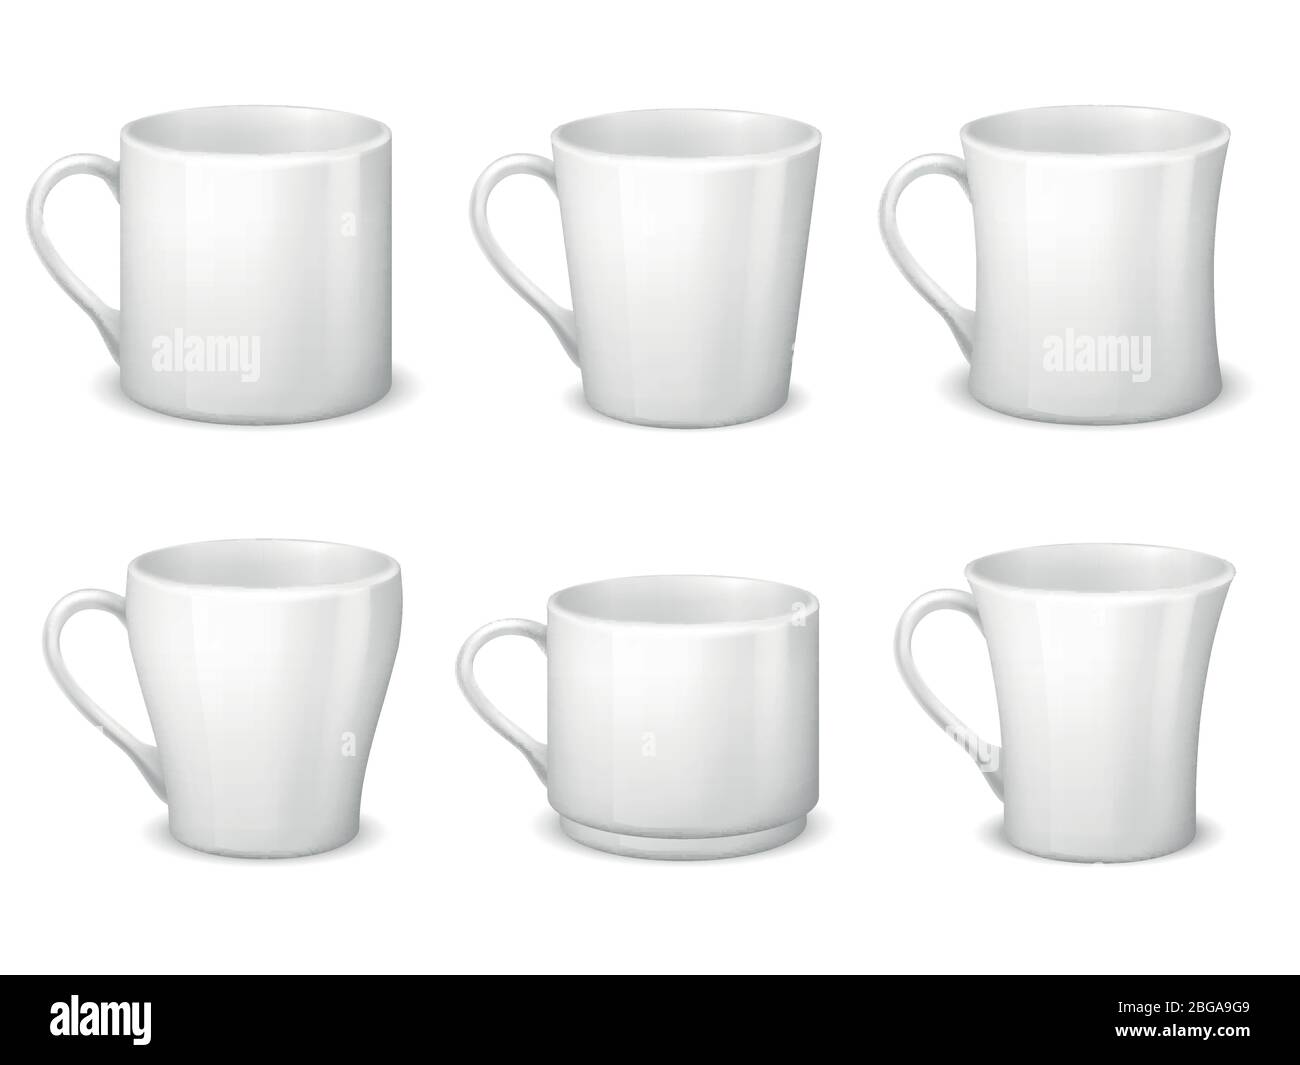 Tasses à café blanches réalistes avec poignée et tasses en porcelaine modèle vectoriel isolé. Tasse de porcelaine pour le thé et le café petit déjeuner, illustration réaliste de teacup Illustration de Vecteur